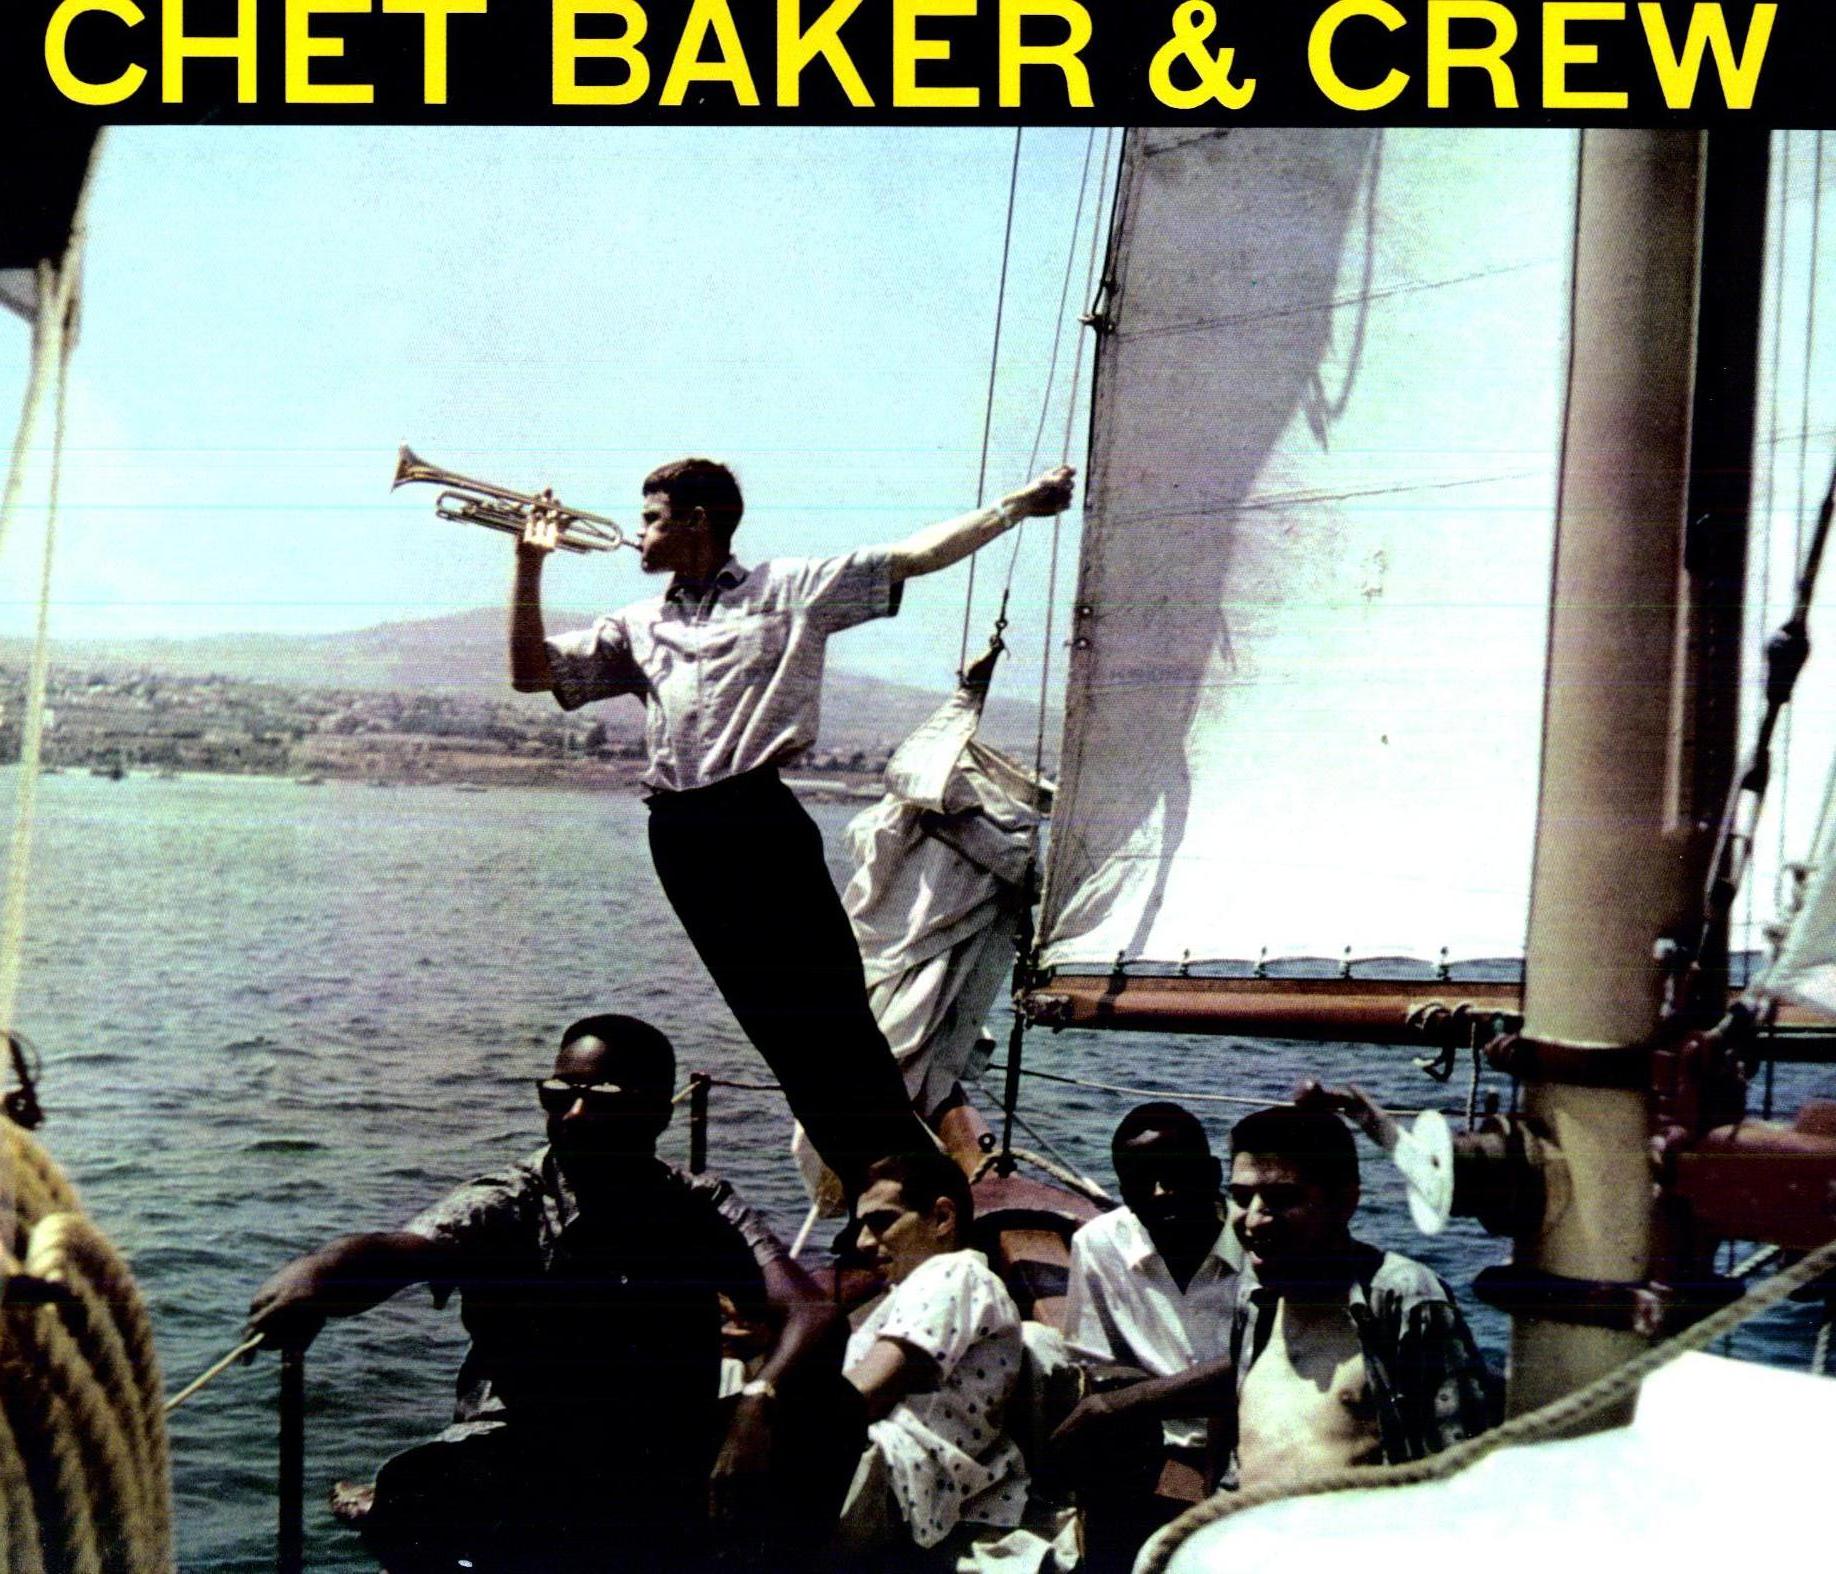 CHET BAKER & CREW (OGV)